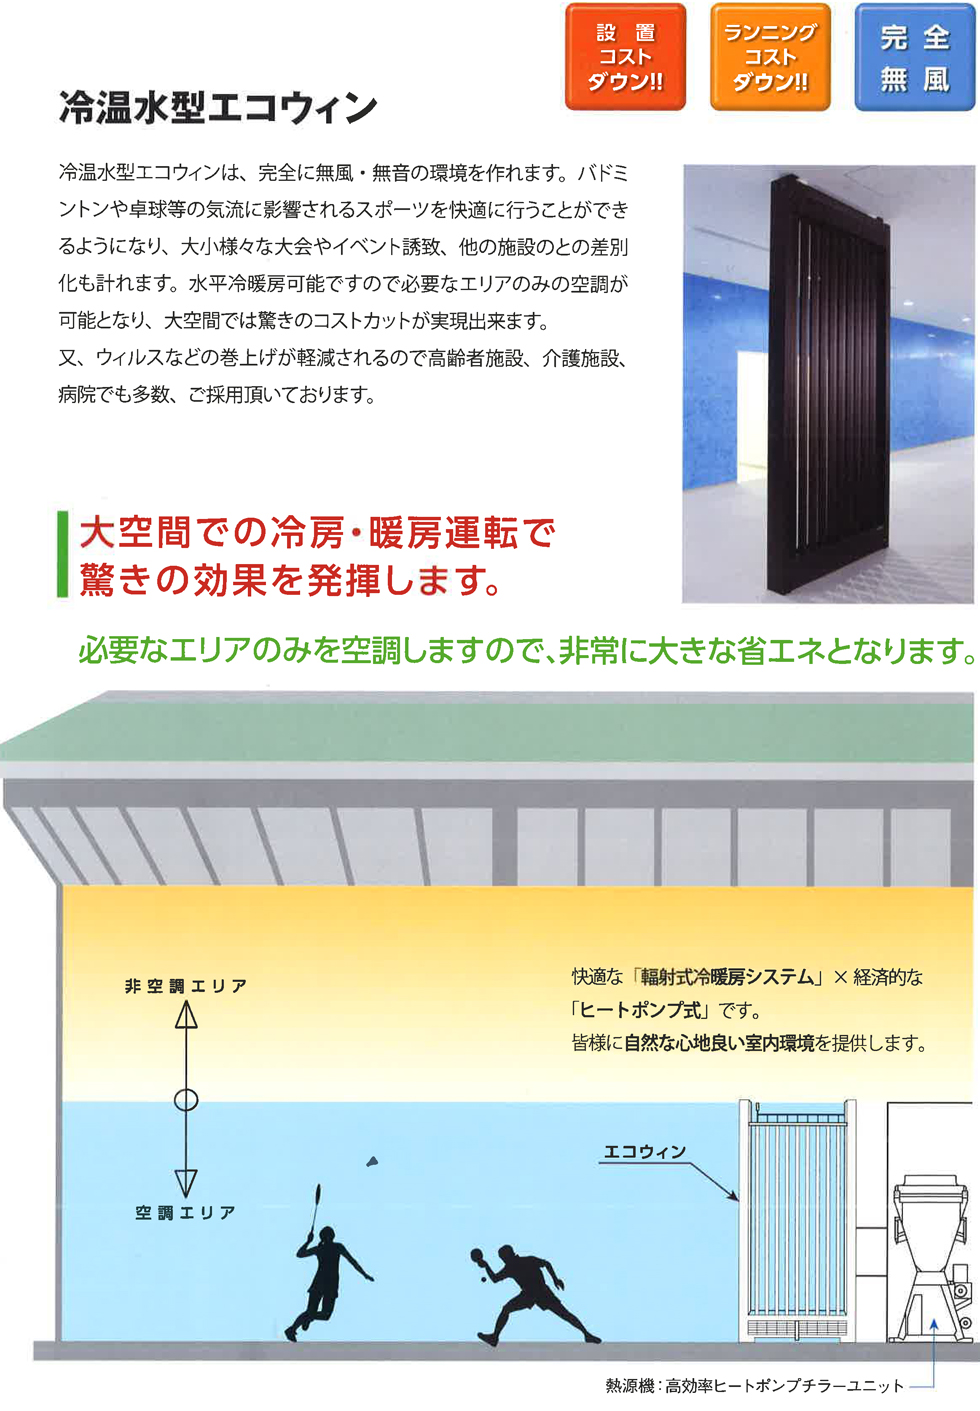 輻射式冷暖房装置エコウィン